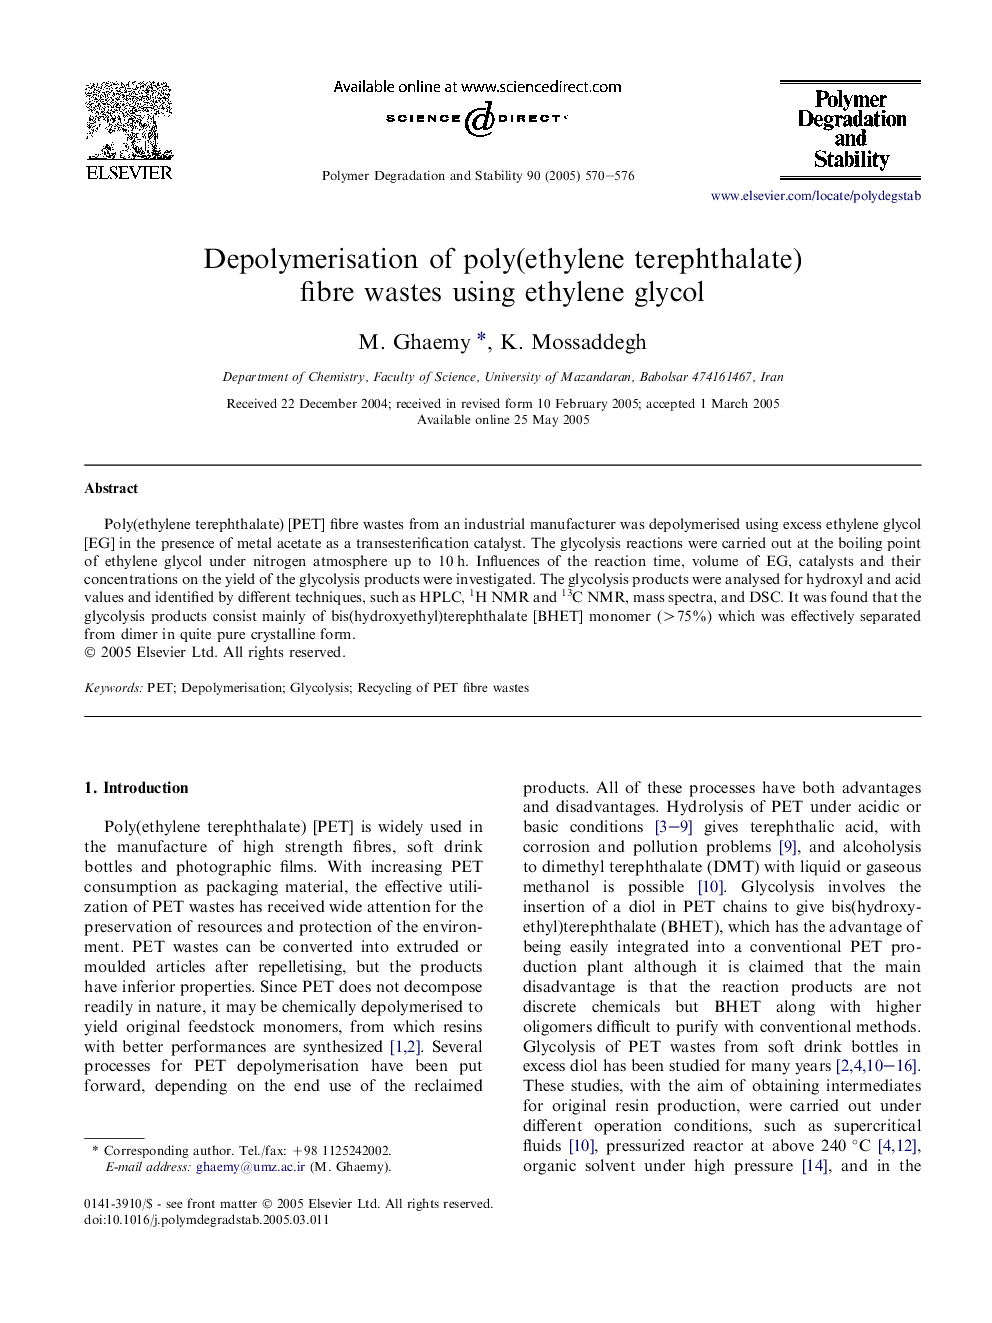 Depolymerisation of poly(ethylene terephthalate) fibre wastes using ethylene glycol